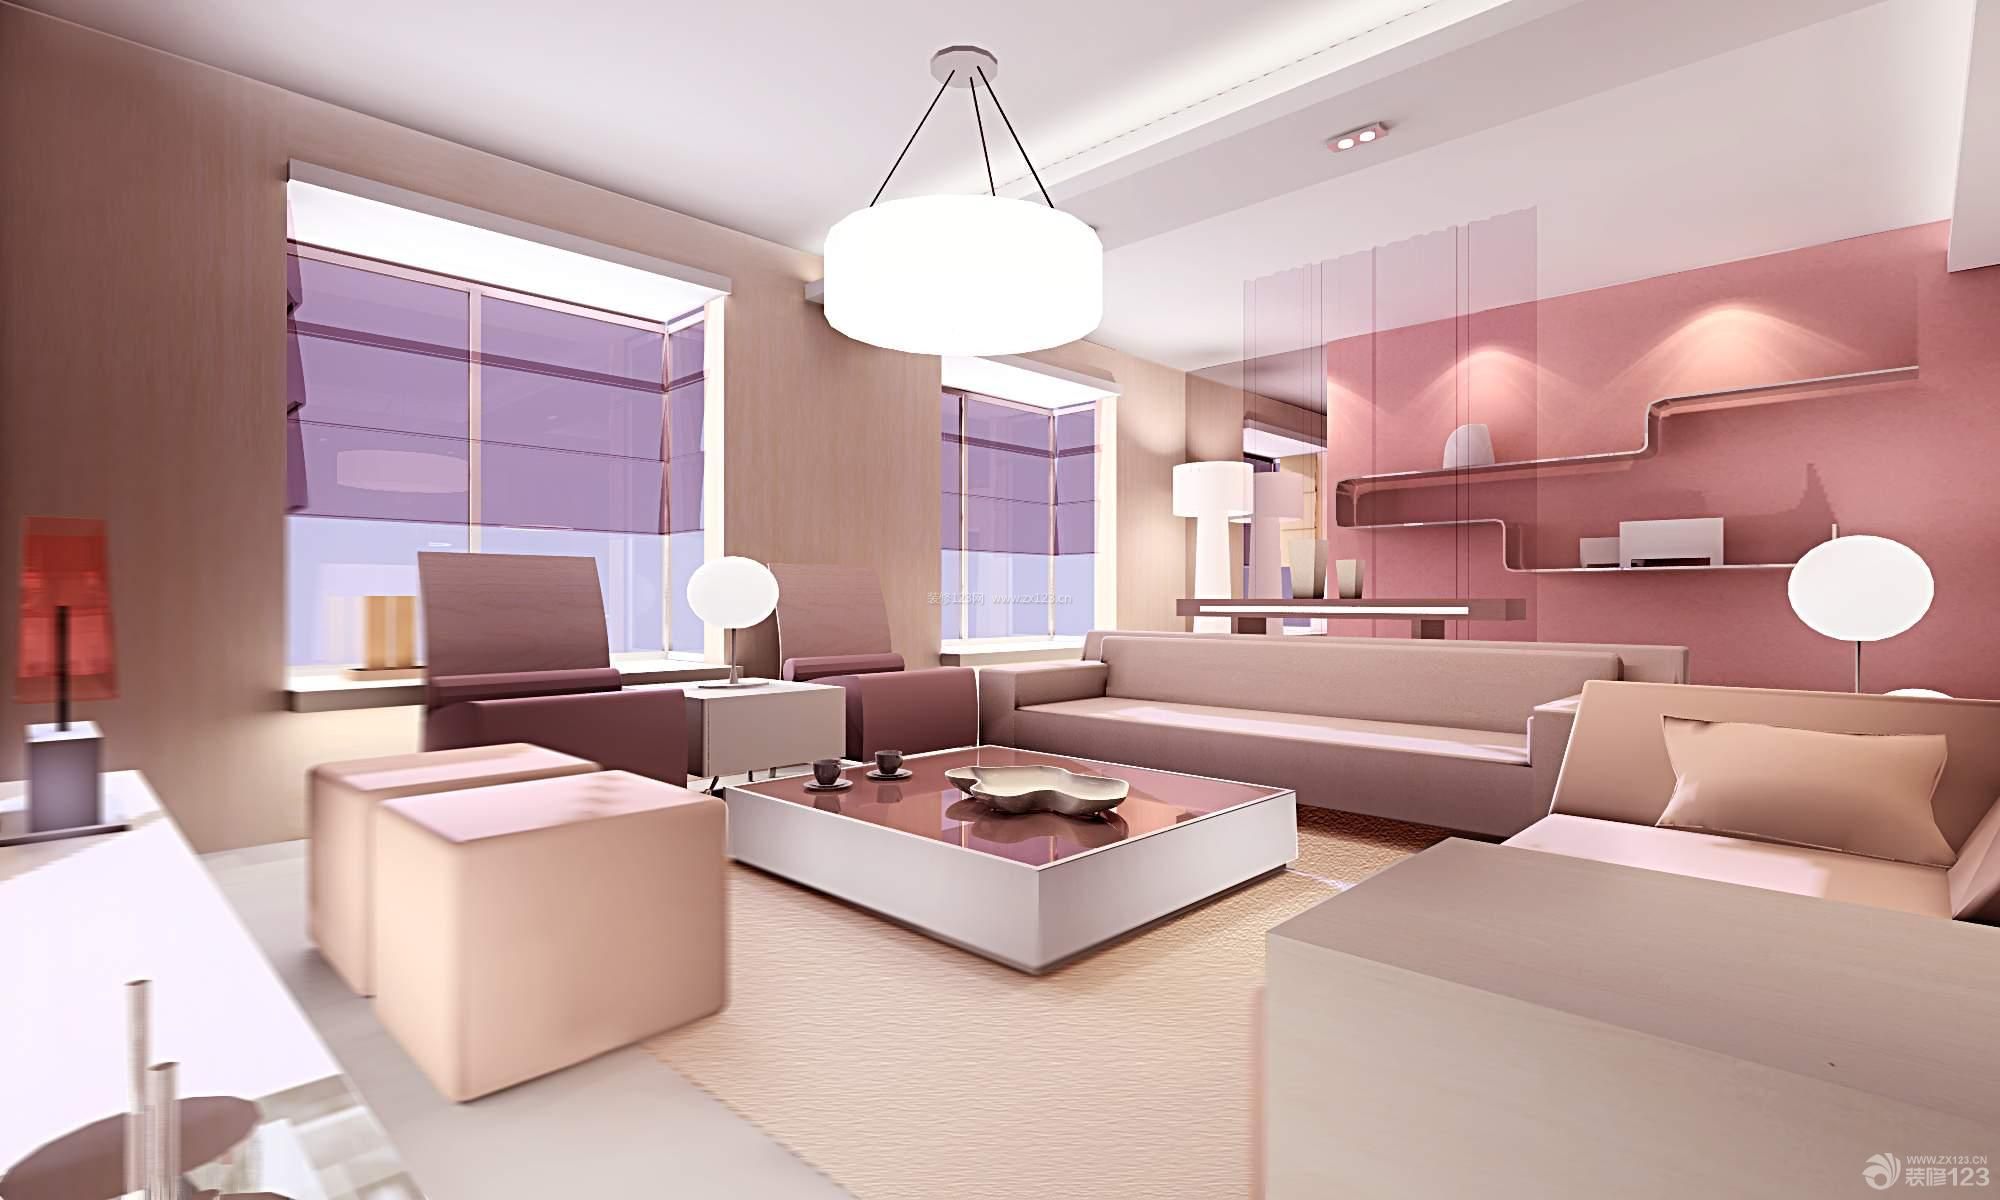 现代简约风格 跃层设计 时尚客厅 沙发垫 双人沙发 沙发椅 泛白色地砖 地毯 